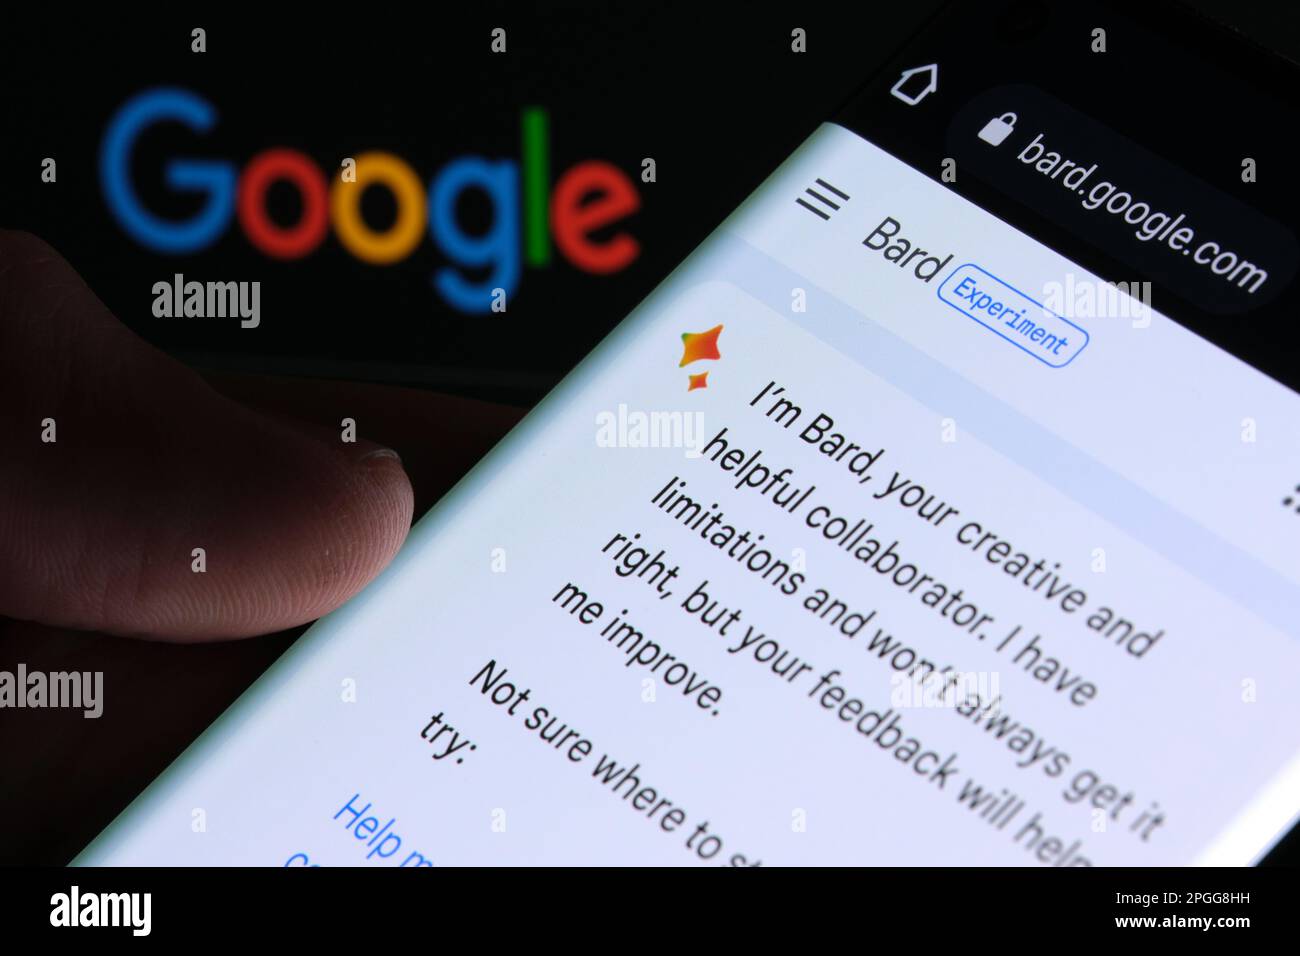 Google Bard ai chatbot. Esempio reale di bot chat visto sullo schermo del dispositivo e logo Google sullo sfondo. Stafford, Regno Unito, 22 marzo 2023 Foto Stock